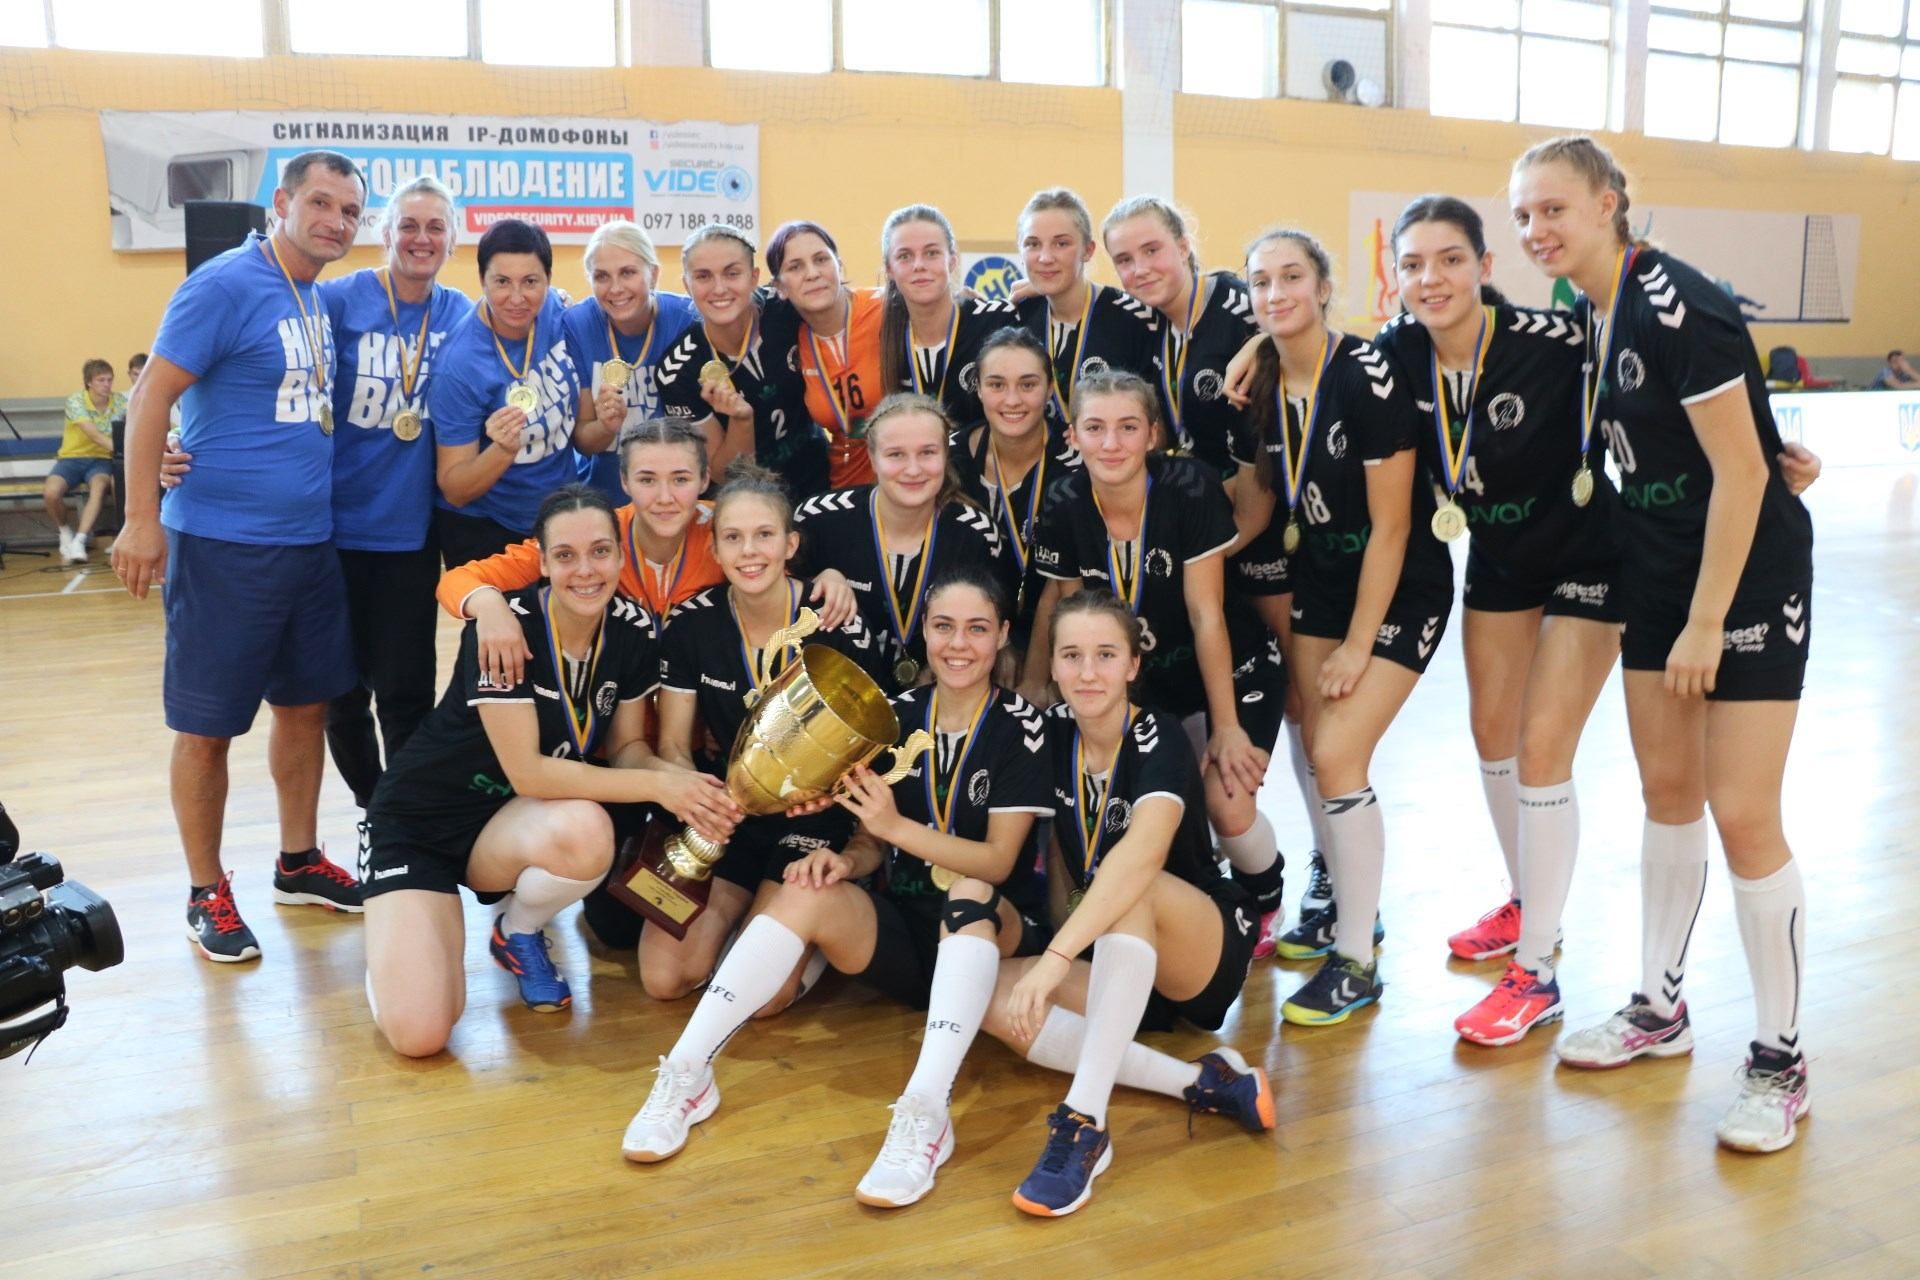 Львовская "Галичанка" выиграла Суперкубок Украины по гандболу